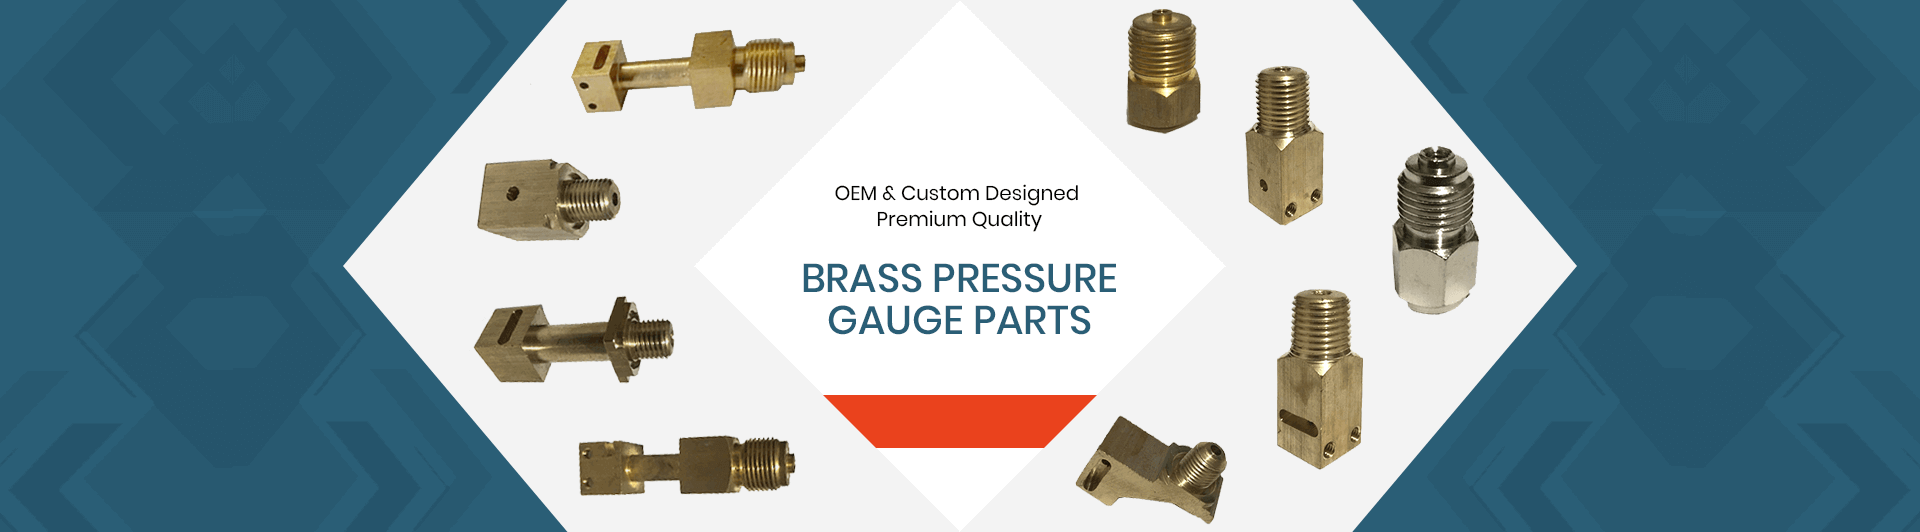 brass pressure gauge parts supplier